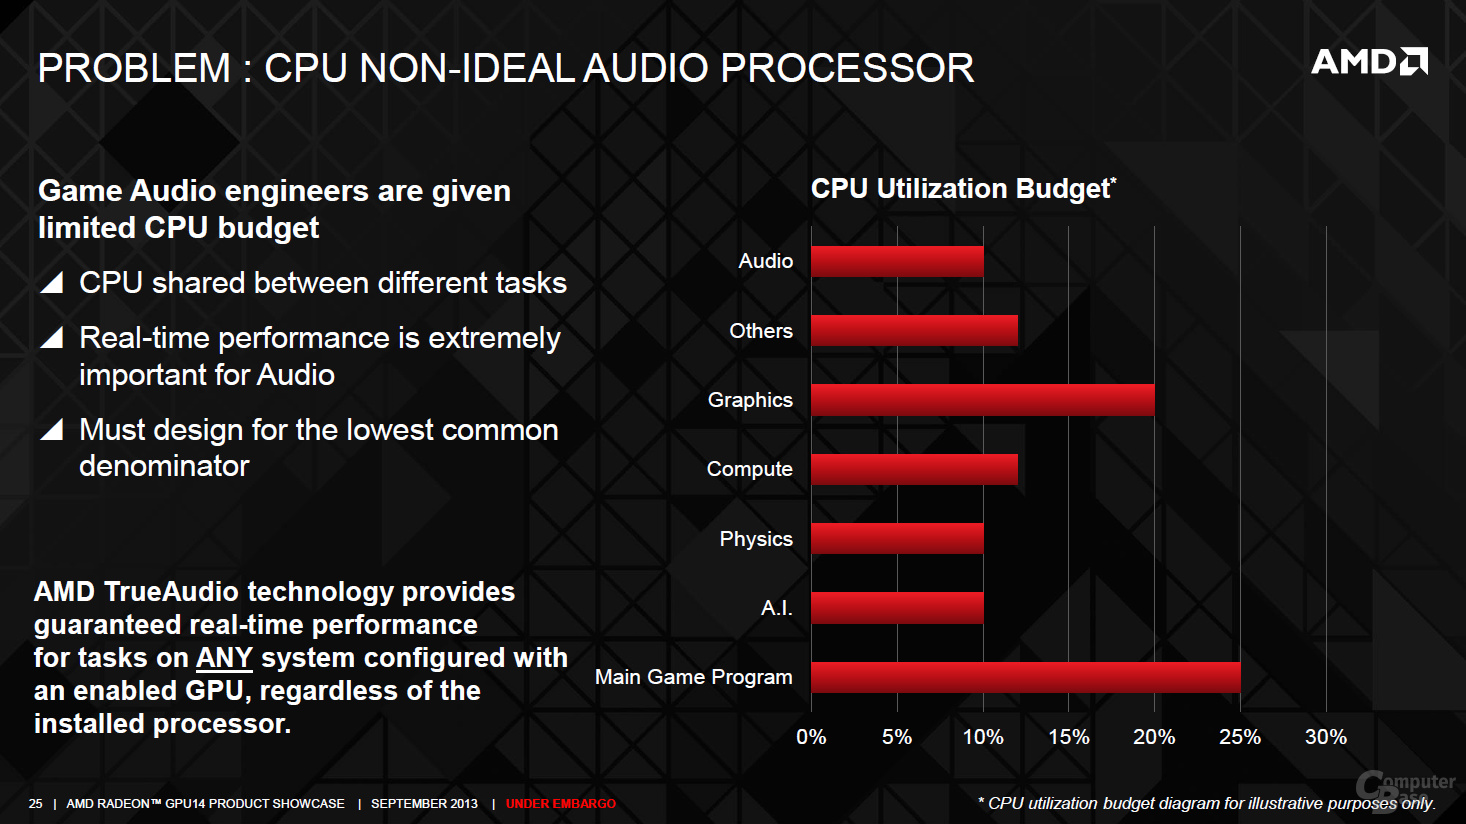 AMD TrueAudio